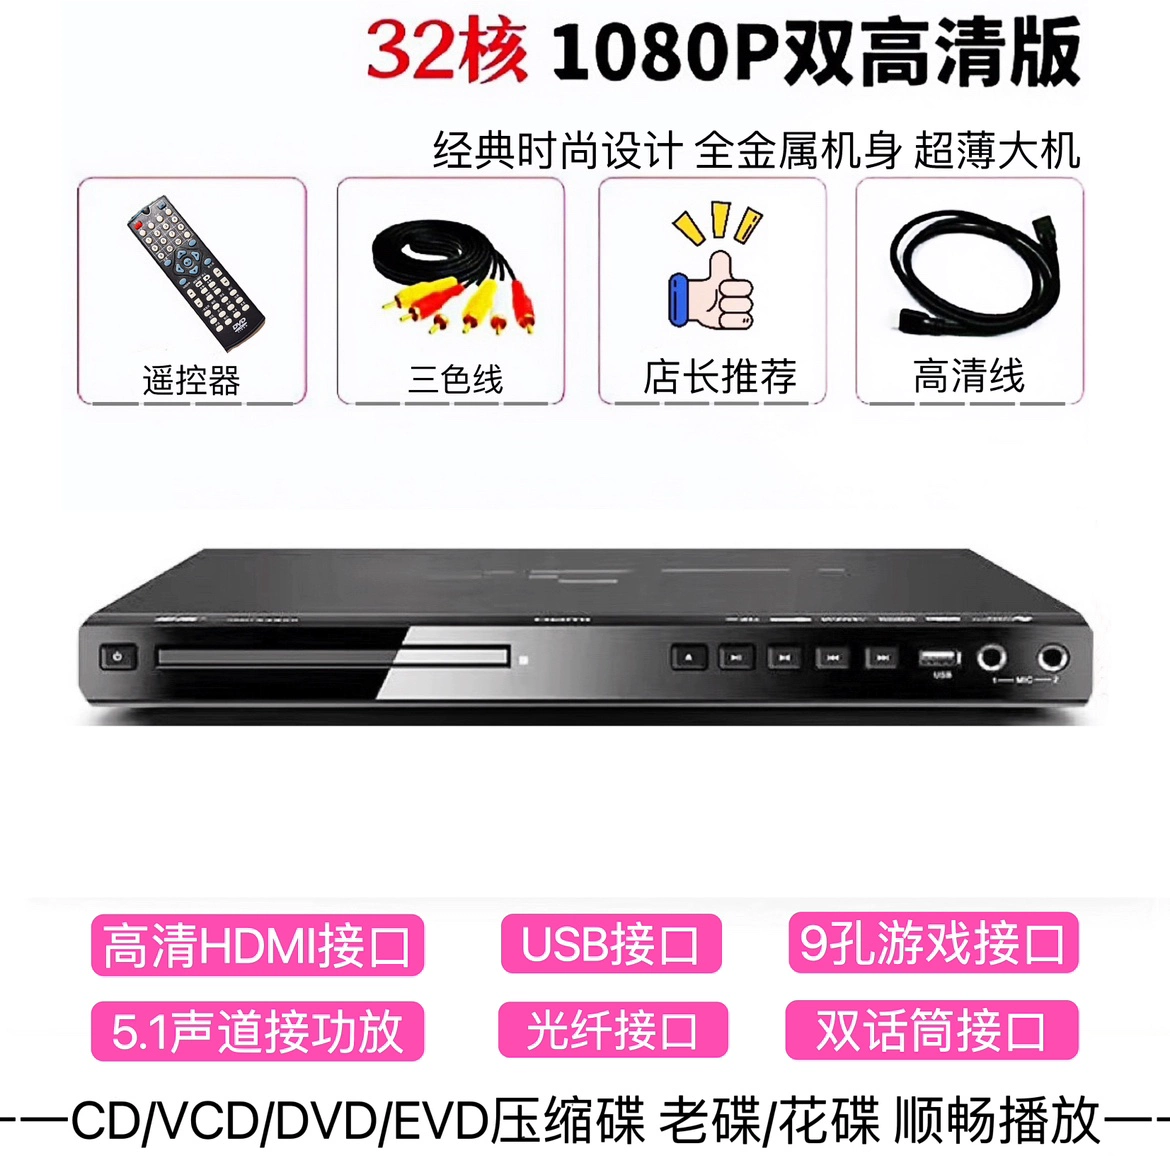 sub blaupunkt xlf 180a nhái Jinzheng đầu DVD đầy đủ định dạng độ nét cao evd nhà âm nhạc năng động máy nghe nhạc vcd đĩa USB mp4 phim phong cách mới chế loa sub ô tô loa gầm ghế ô tô 